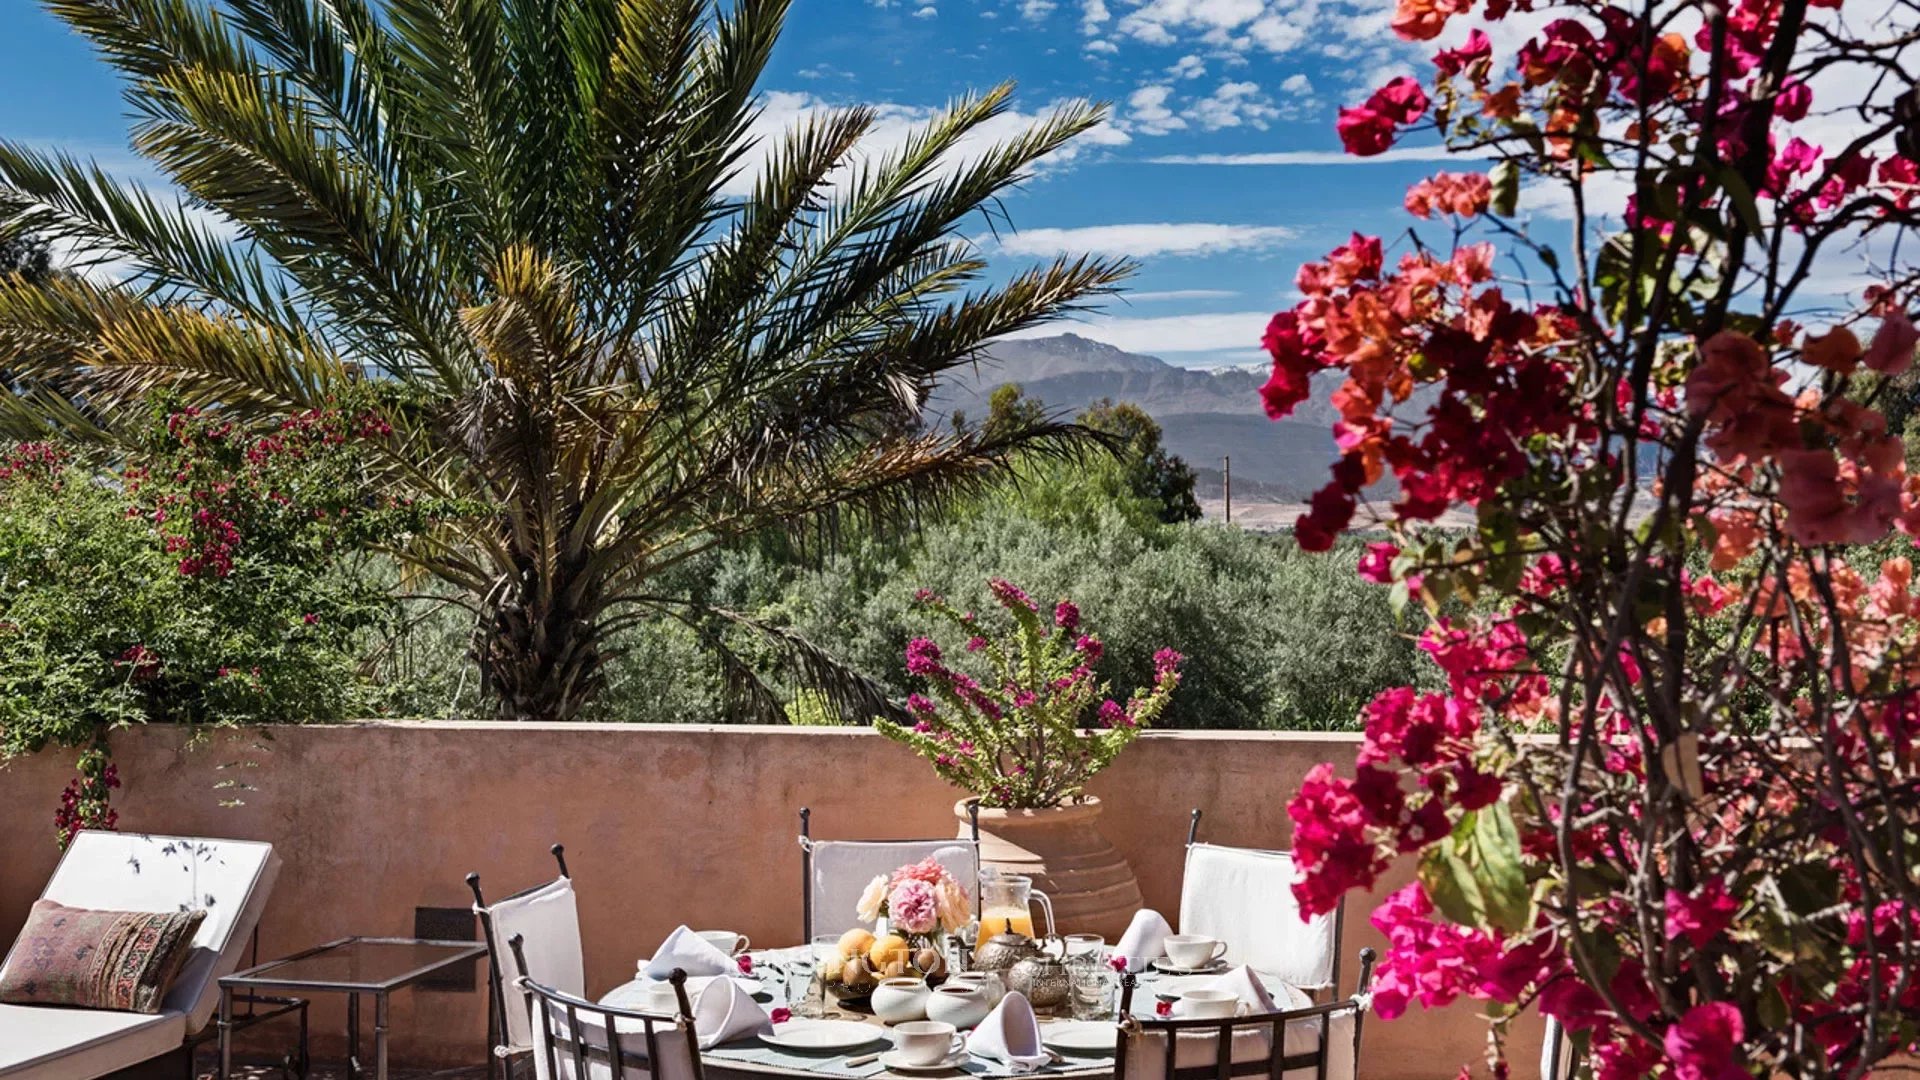 Villa Tamasna in Marrakech, Morocco